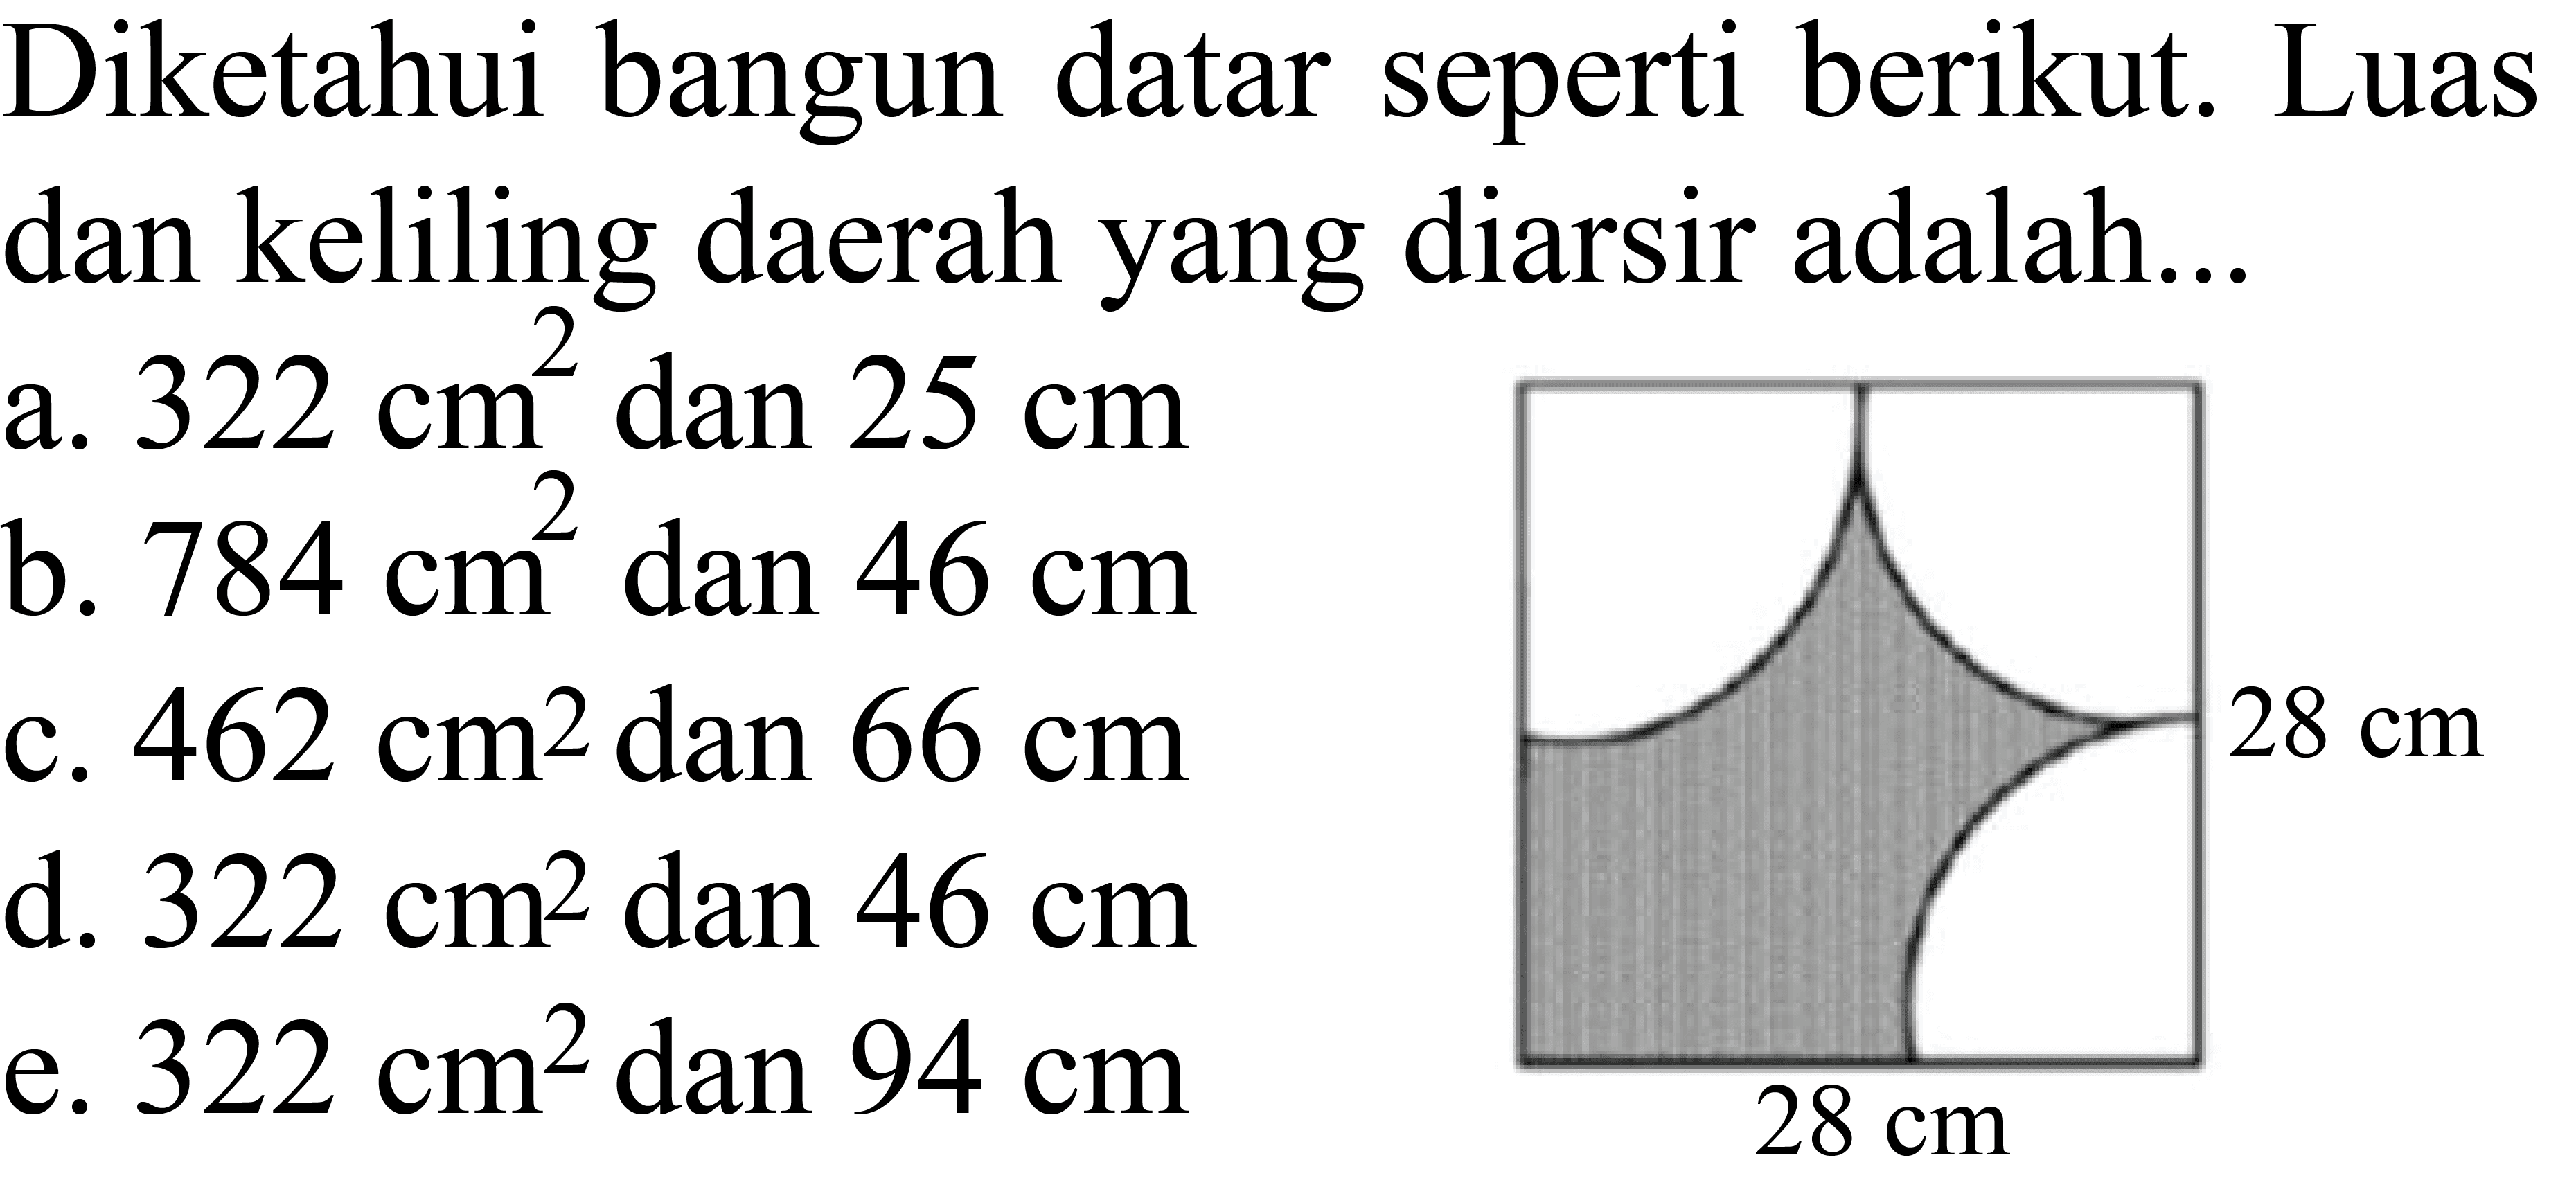 28 cm 28 cm
Diketahui bangun datar seperti berikut. Luas dan keliling daerah yang diarsir adalah...
a.  322 cm^2  dan  25 cm 
b.  784 cm^2  dan  46 cm 
c.  462 cm^2  dan  66 cm 
d.  322 cm^2  dan  46 cm 